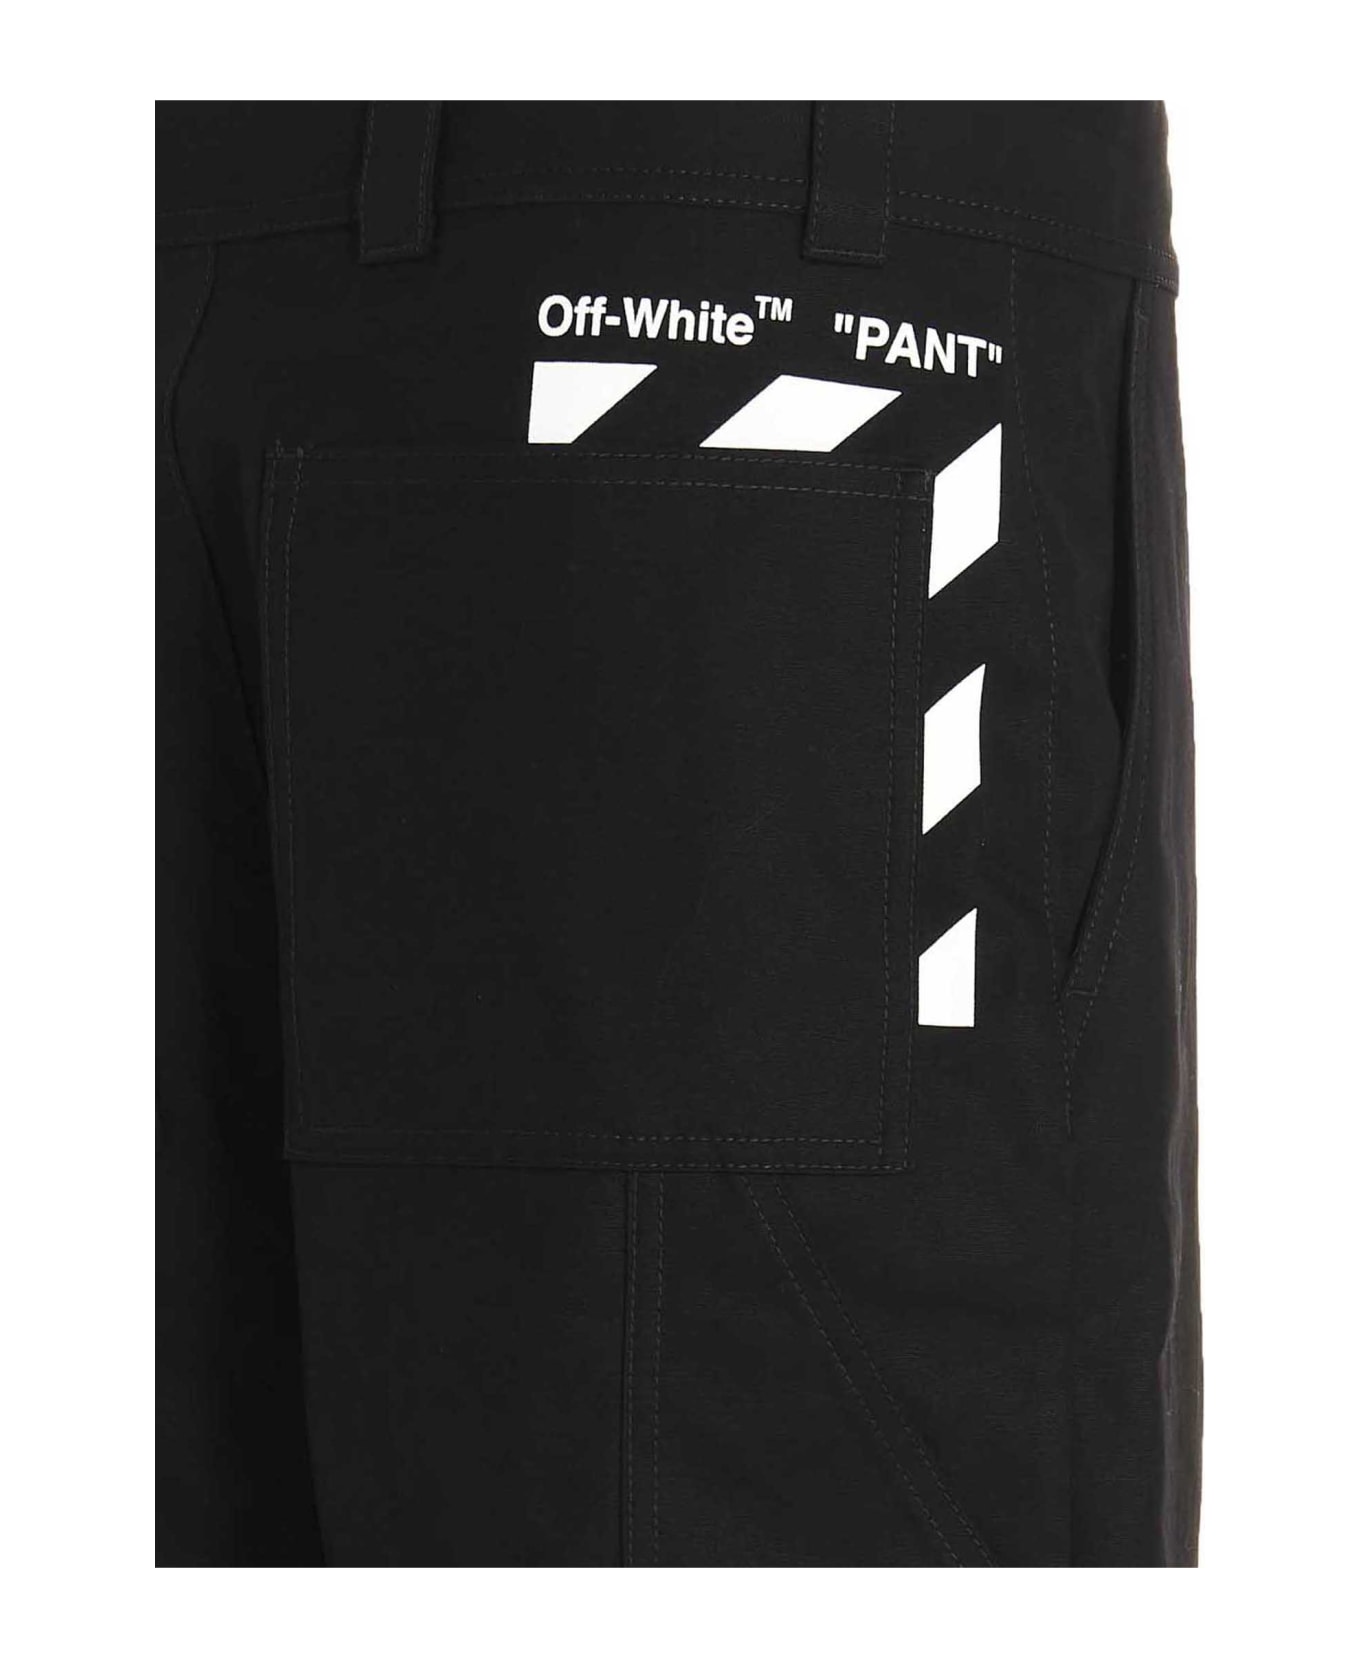 Off-White Diag Pkt Carpenter' Pants - White/Black